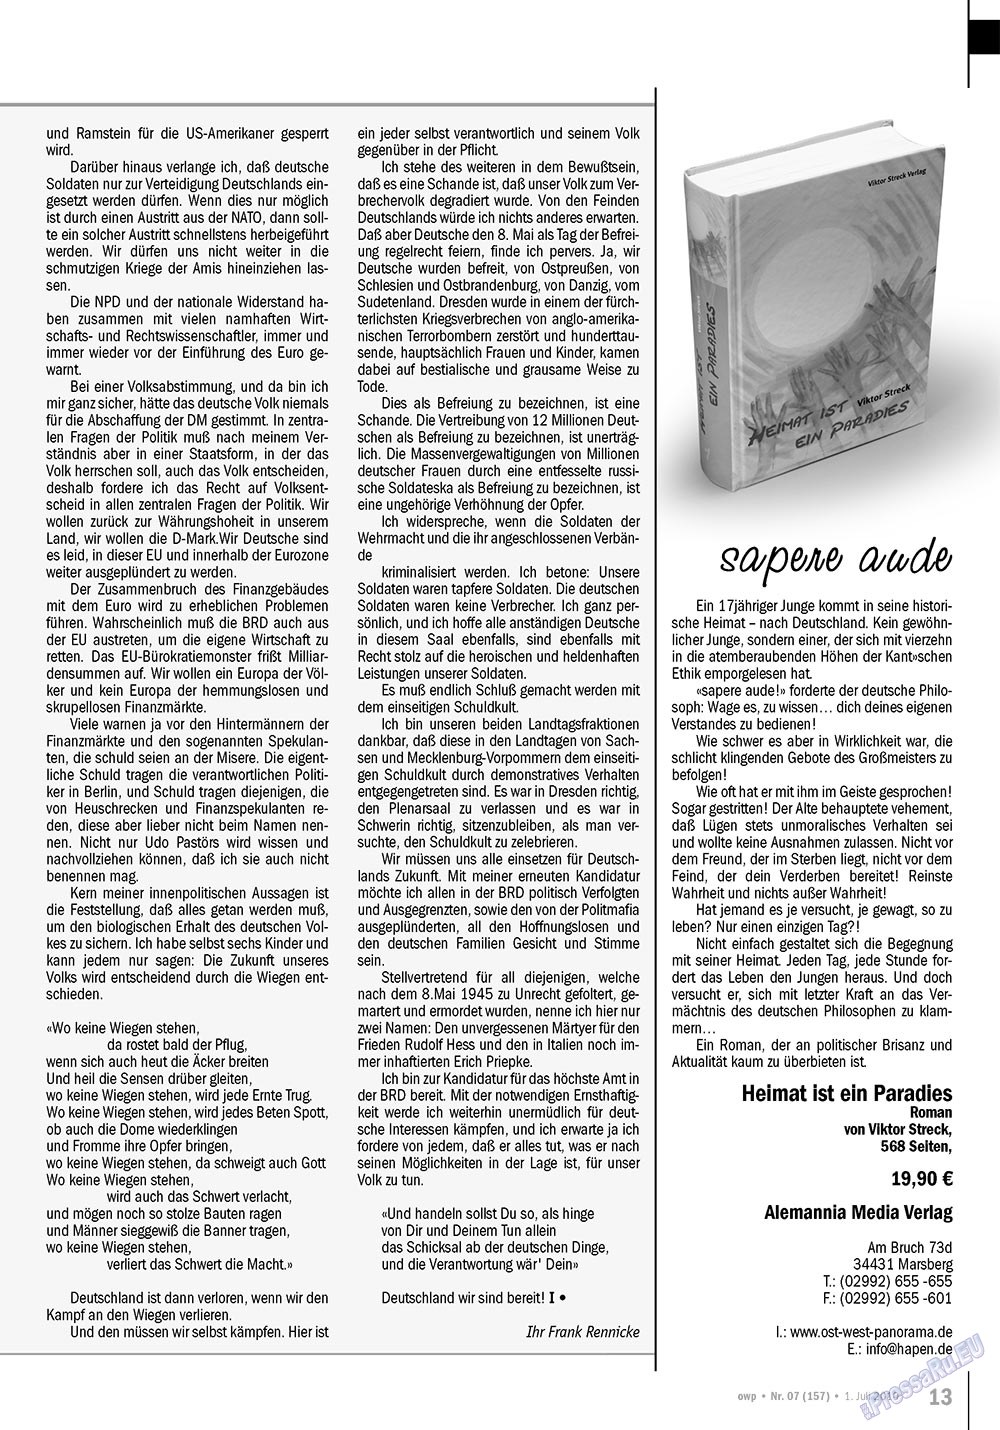 Ost-West Panorama (журнал). 2010 год, номер 7, стр. 13